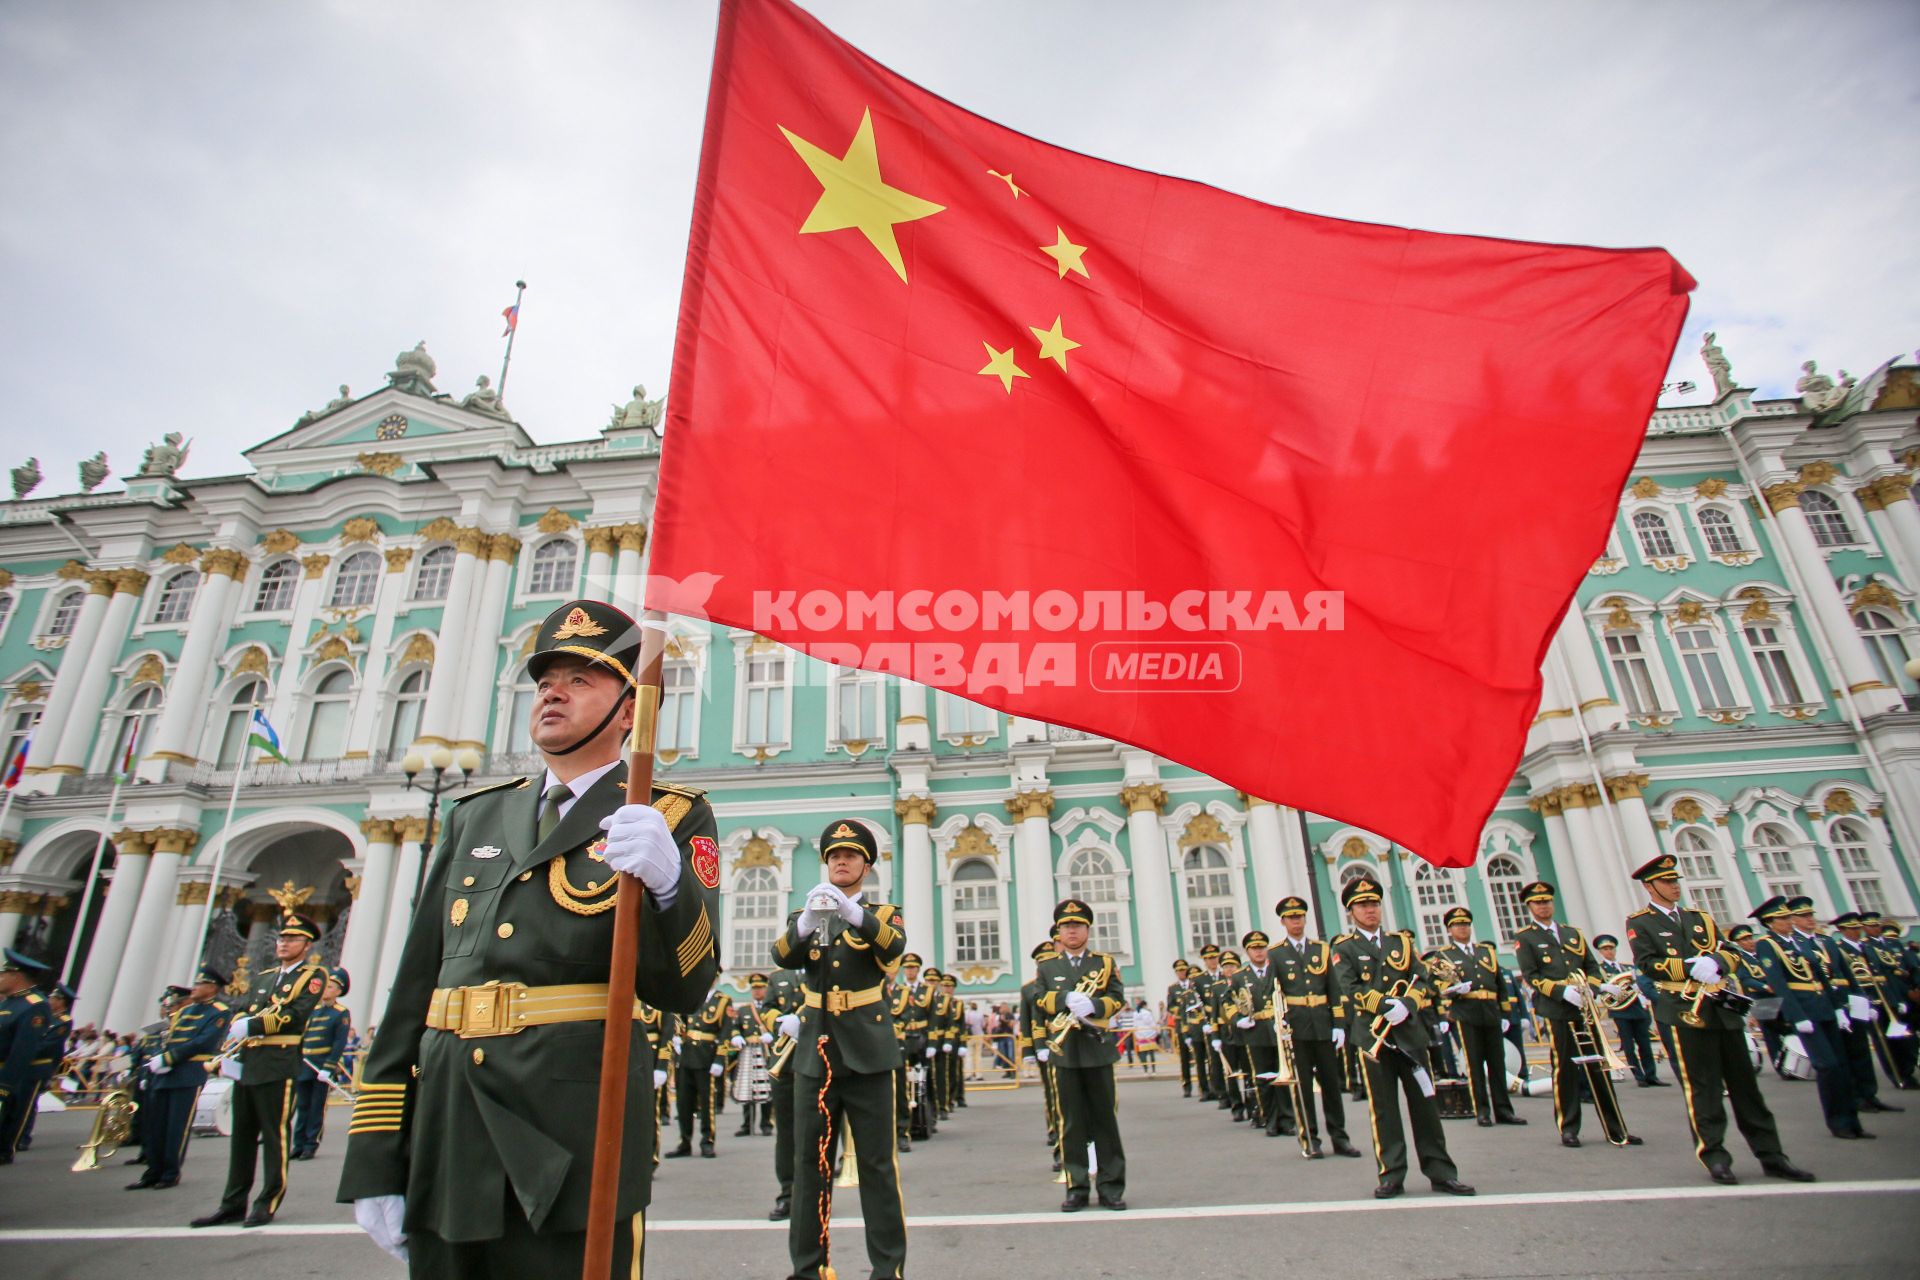 Санкт-Петербург. Показательное выступление китайского оркестра во время парада оркестров на Дворцовой площади.